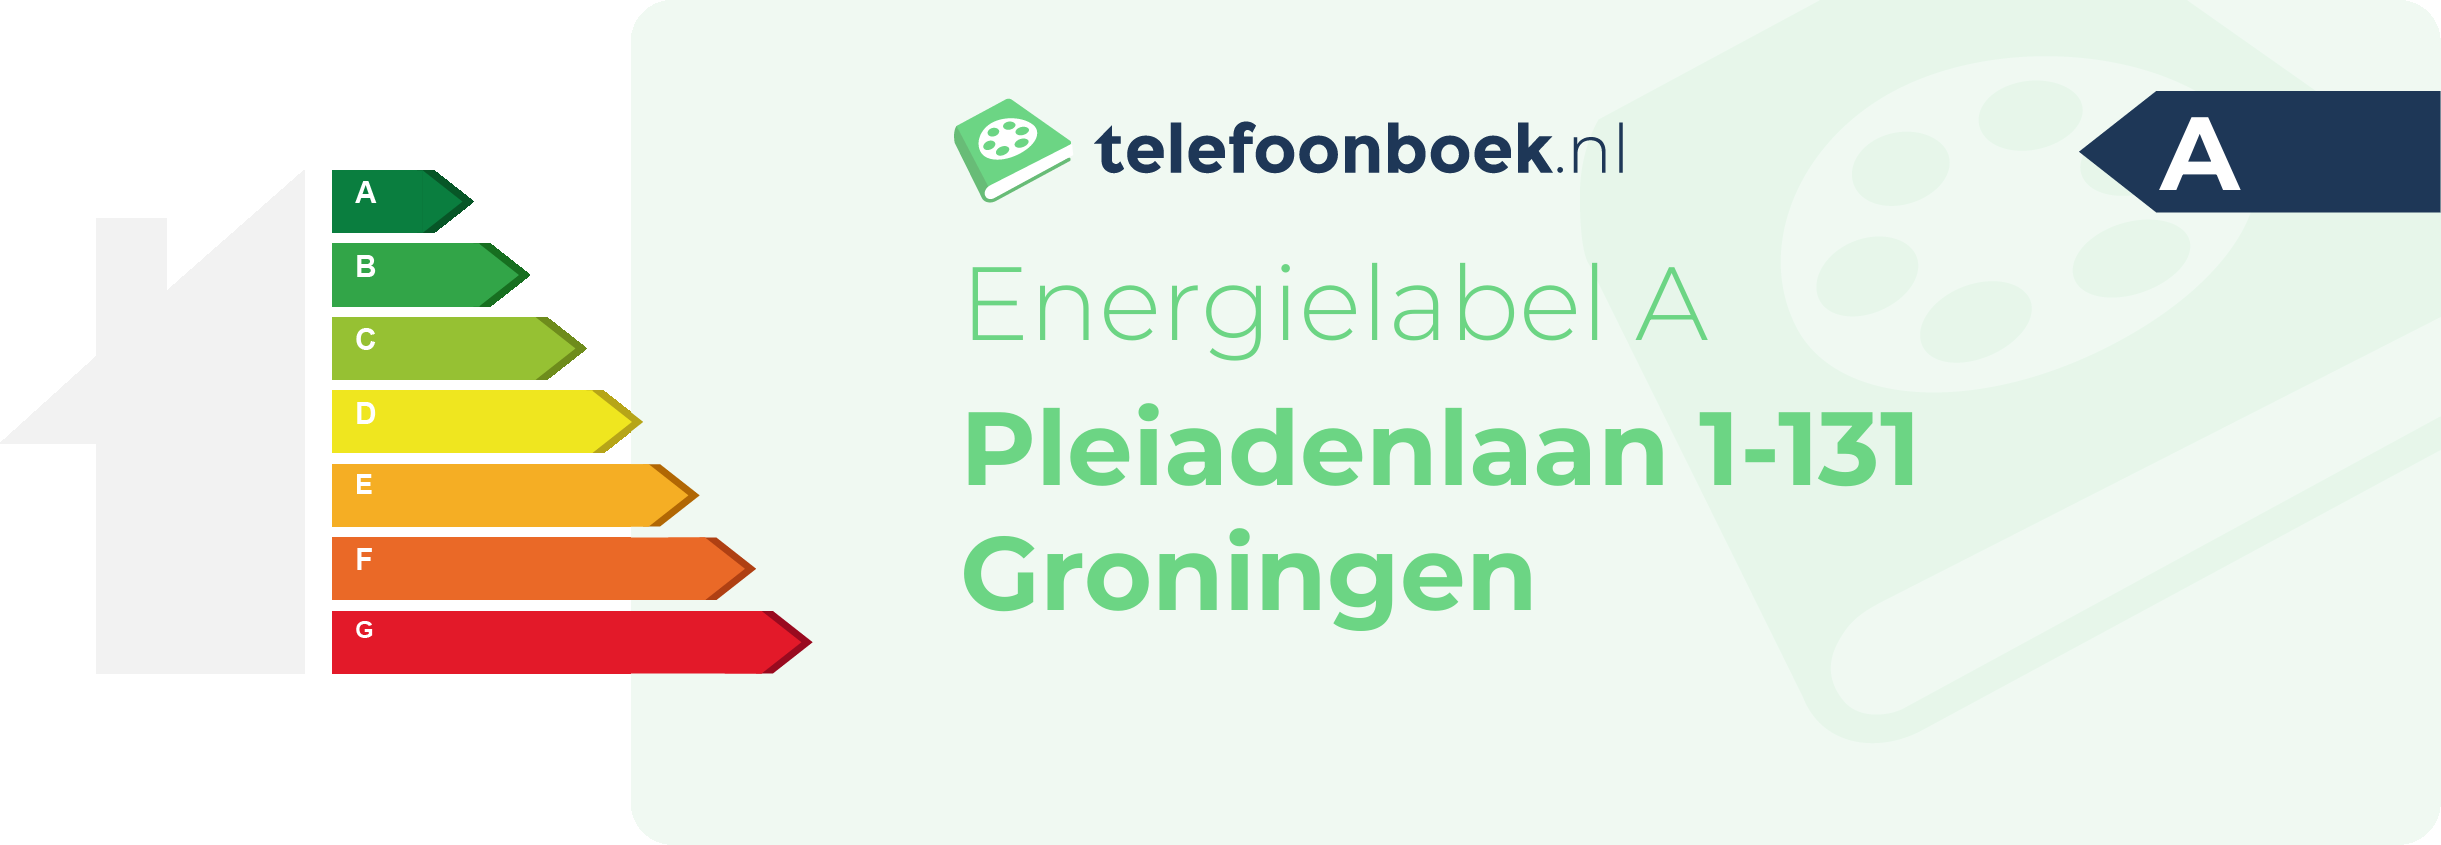 Energielabel Pleiadenlaan 1-131 Groningen